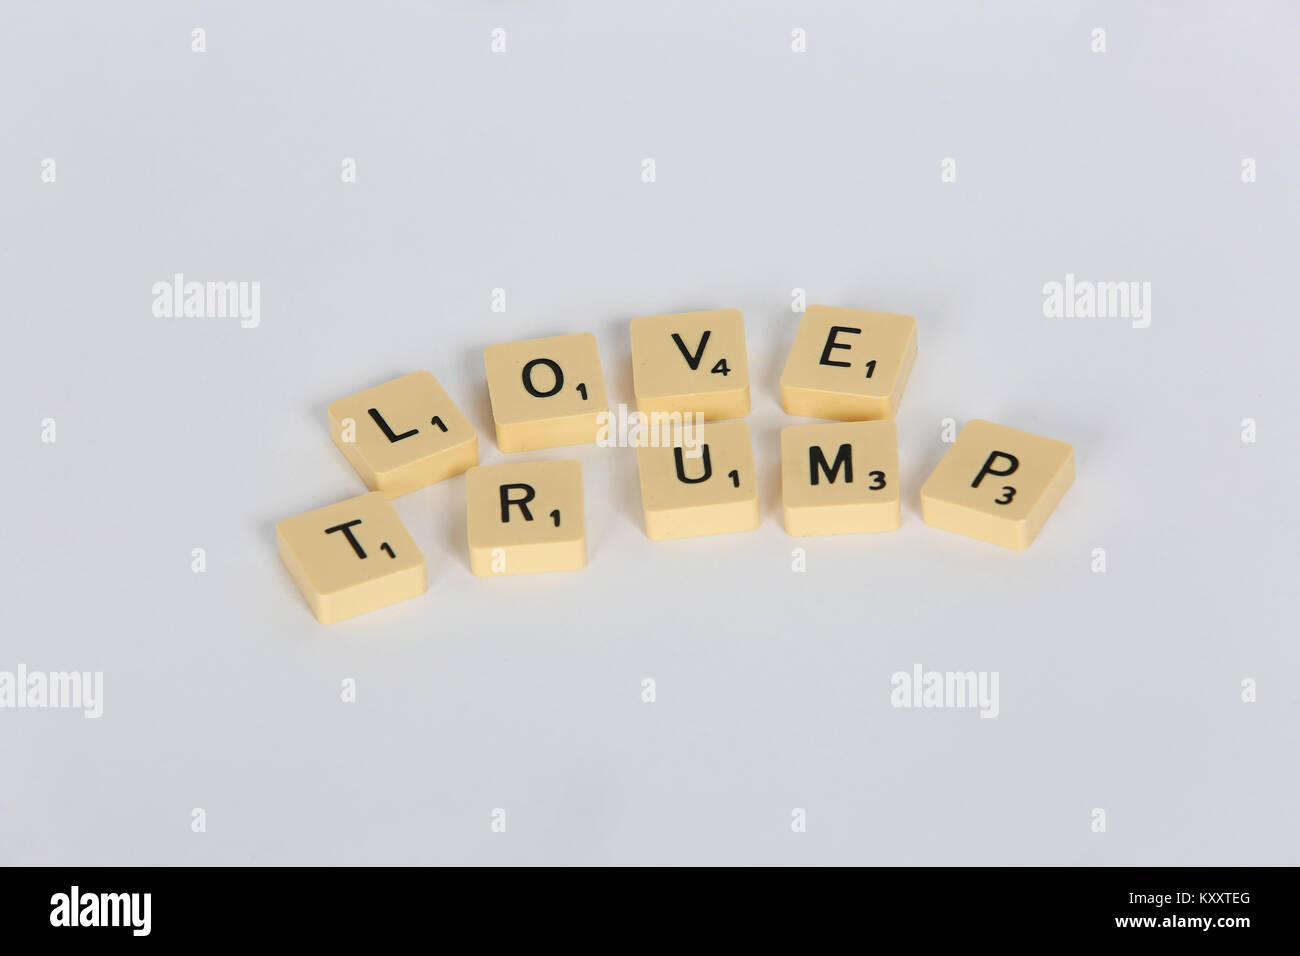 Viejo Scrabble letras de 'amor' y 'odio Trump Trump' sobre un fondo blanco, Londres, Reino Unido. Foto de stock